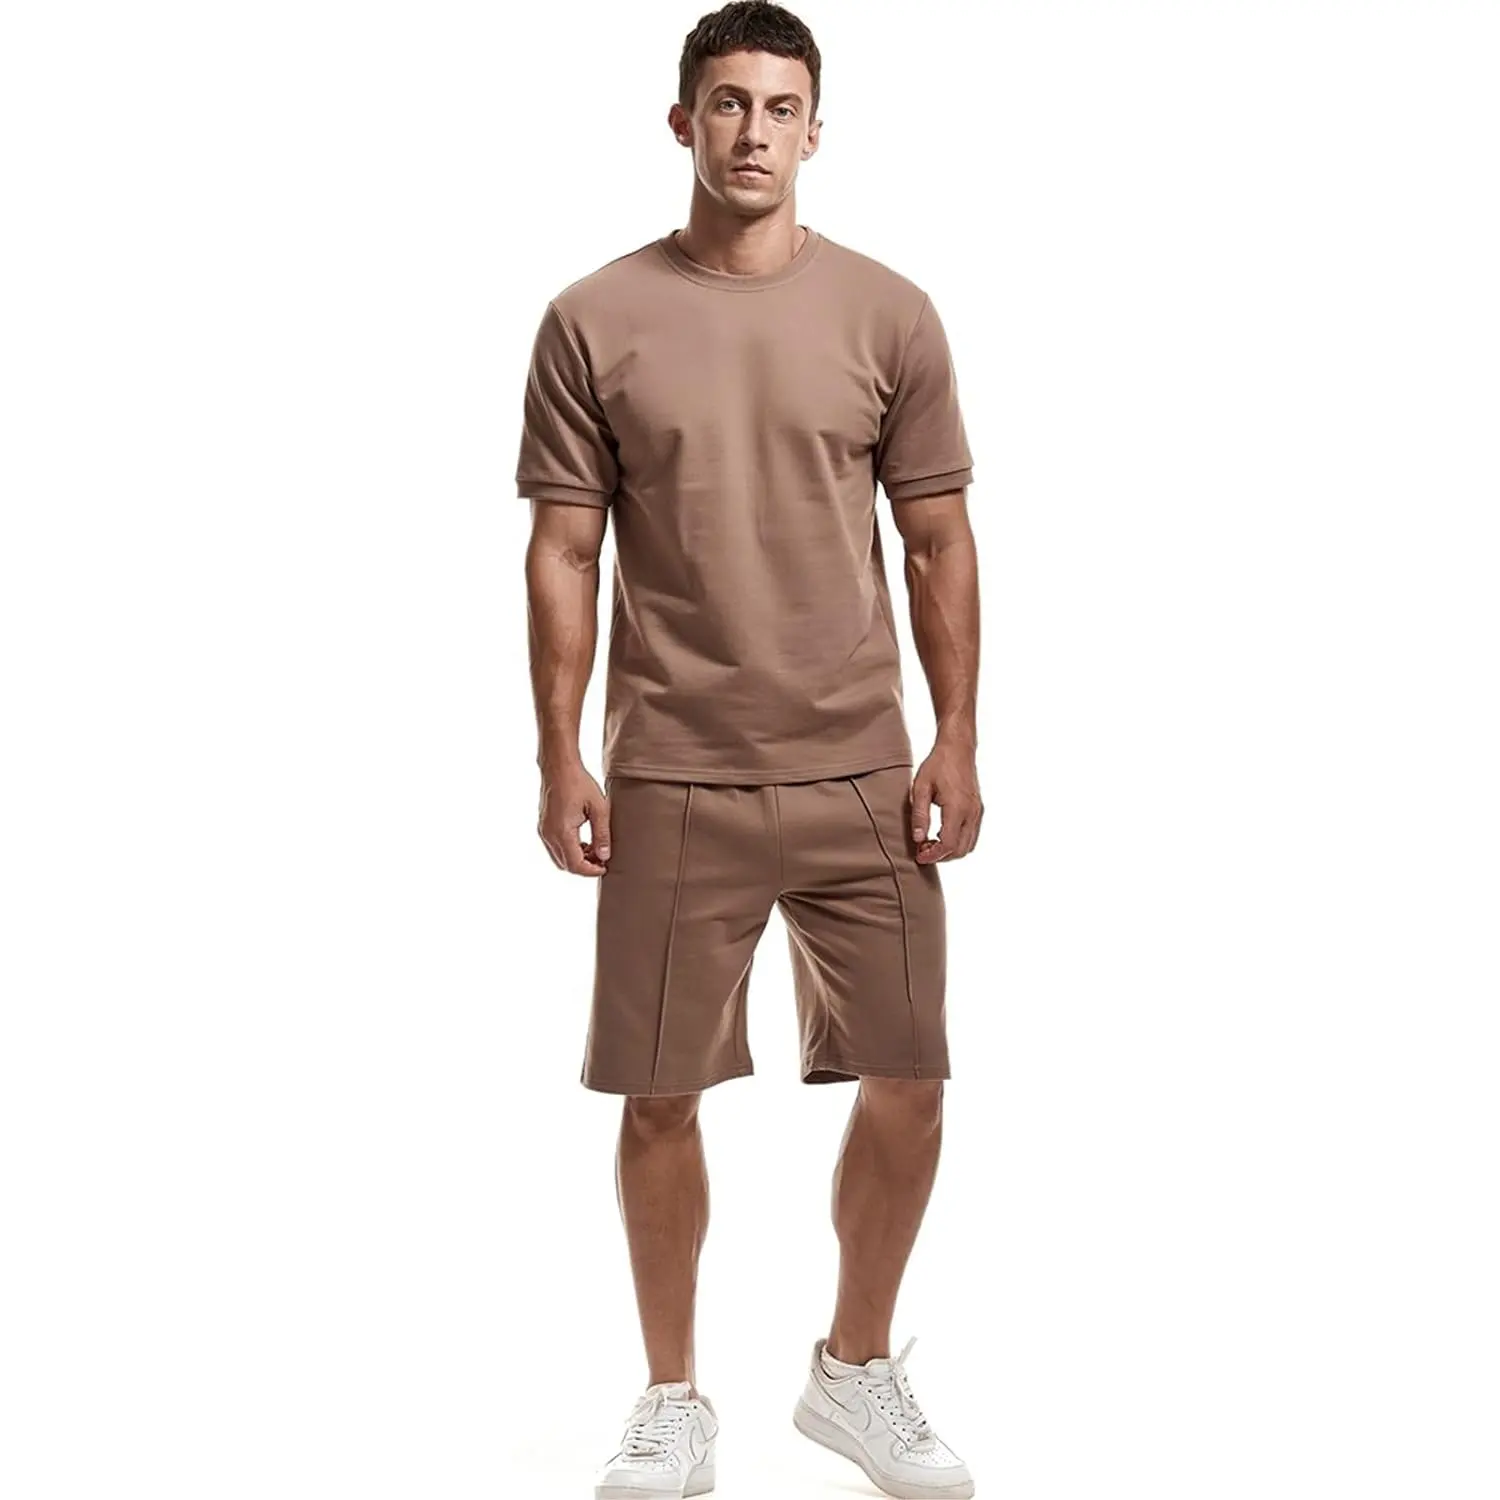 उच्च गुणवत्ता वाले 220 ग्राम भारी कॉटन टी शर्ट छोटे अनुकूलित बड़े आकार के पुरुषों के लिए ब्लैंक समर टी शर्ट और छोटे सेट